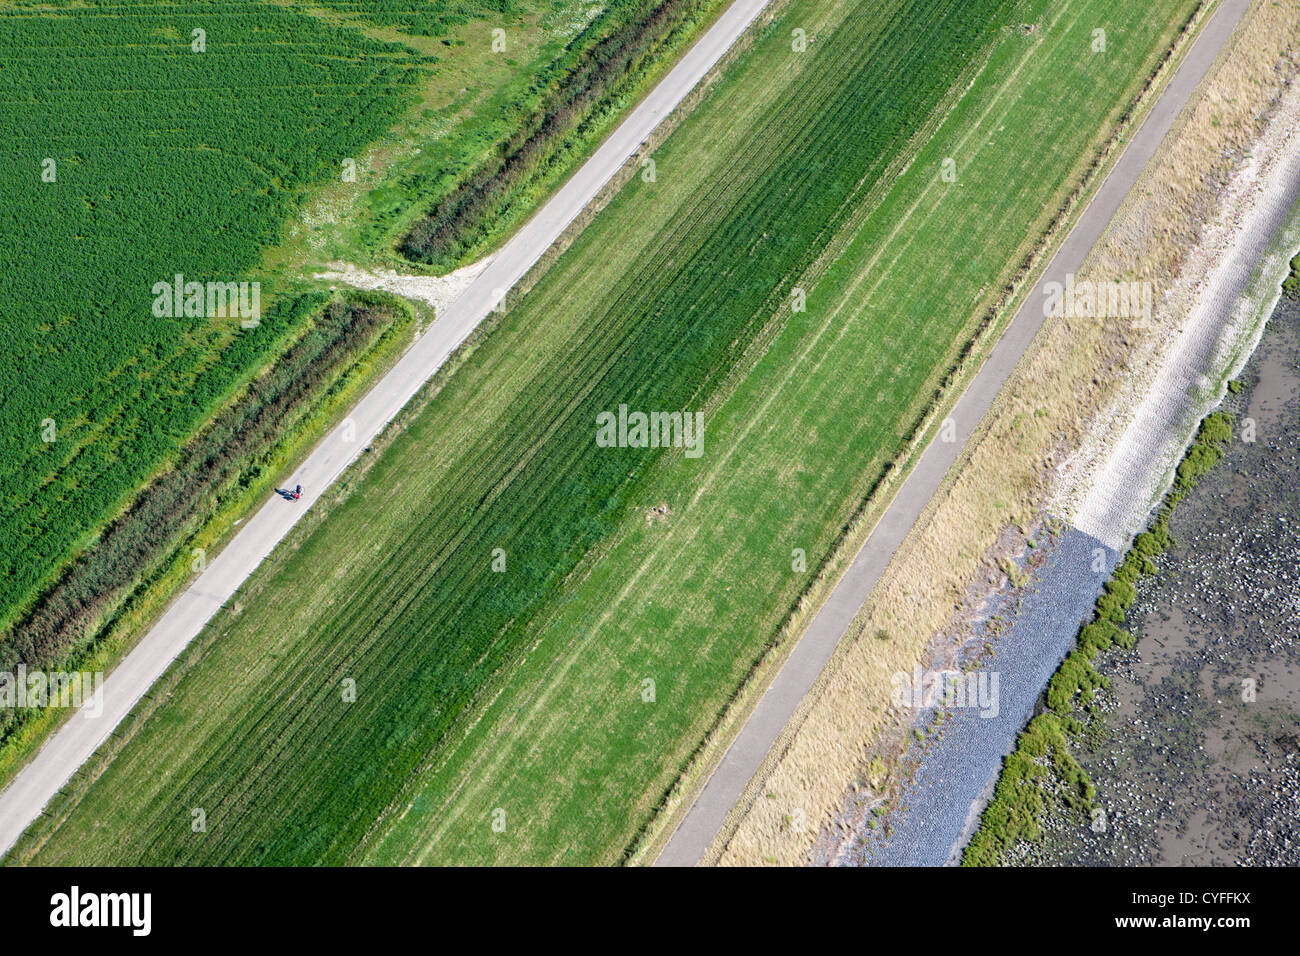 Les Pays-Bas, Nieuw Namen, Digue de polder Hertogin Hedwigepolder appelé près de la rivière Westerschelde. Vue aérienne. Banque D'Images